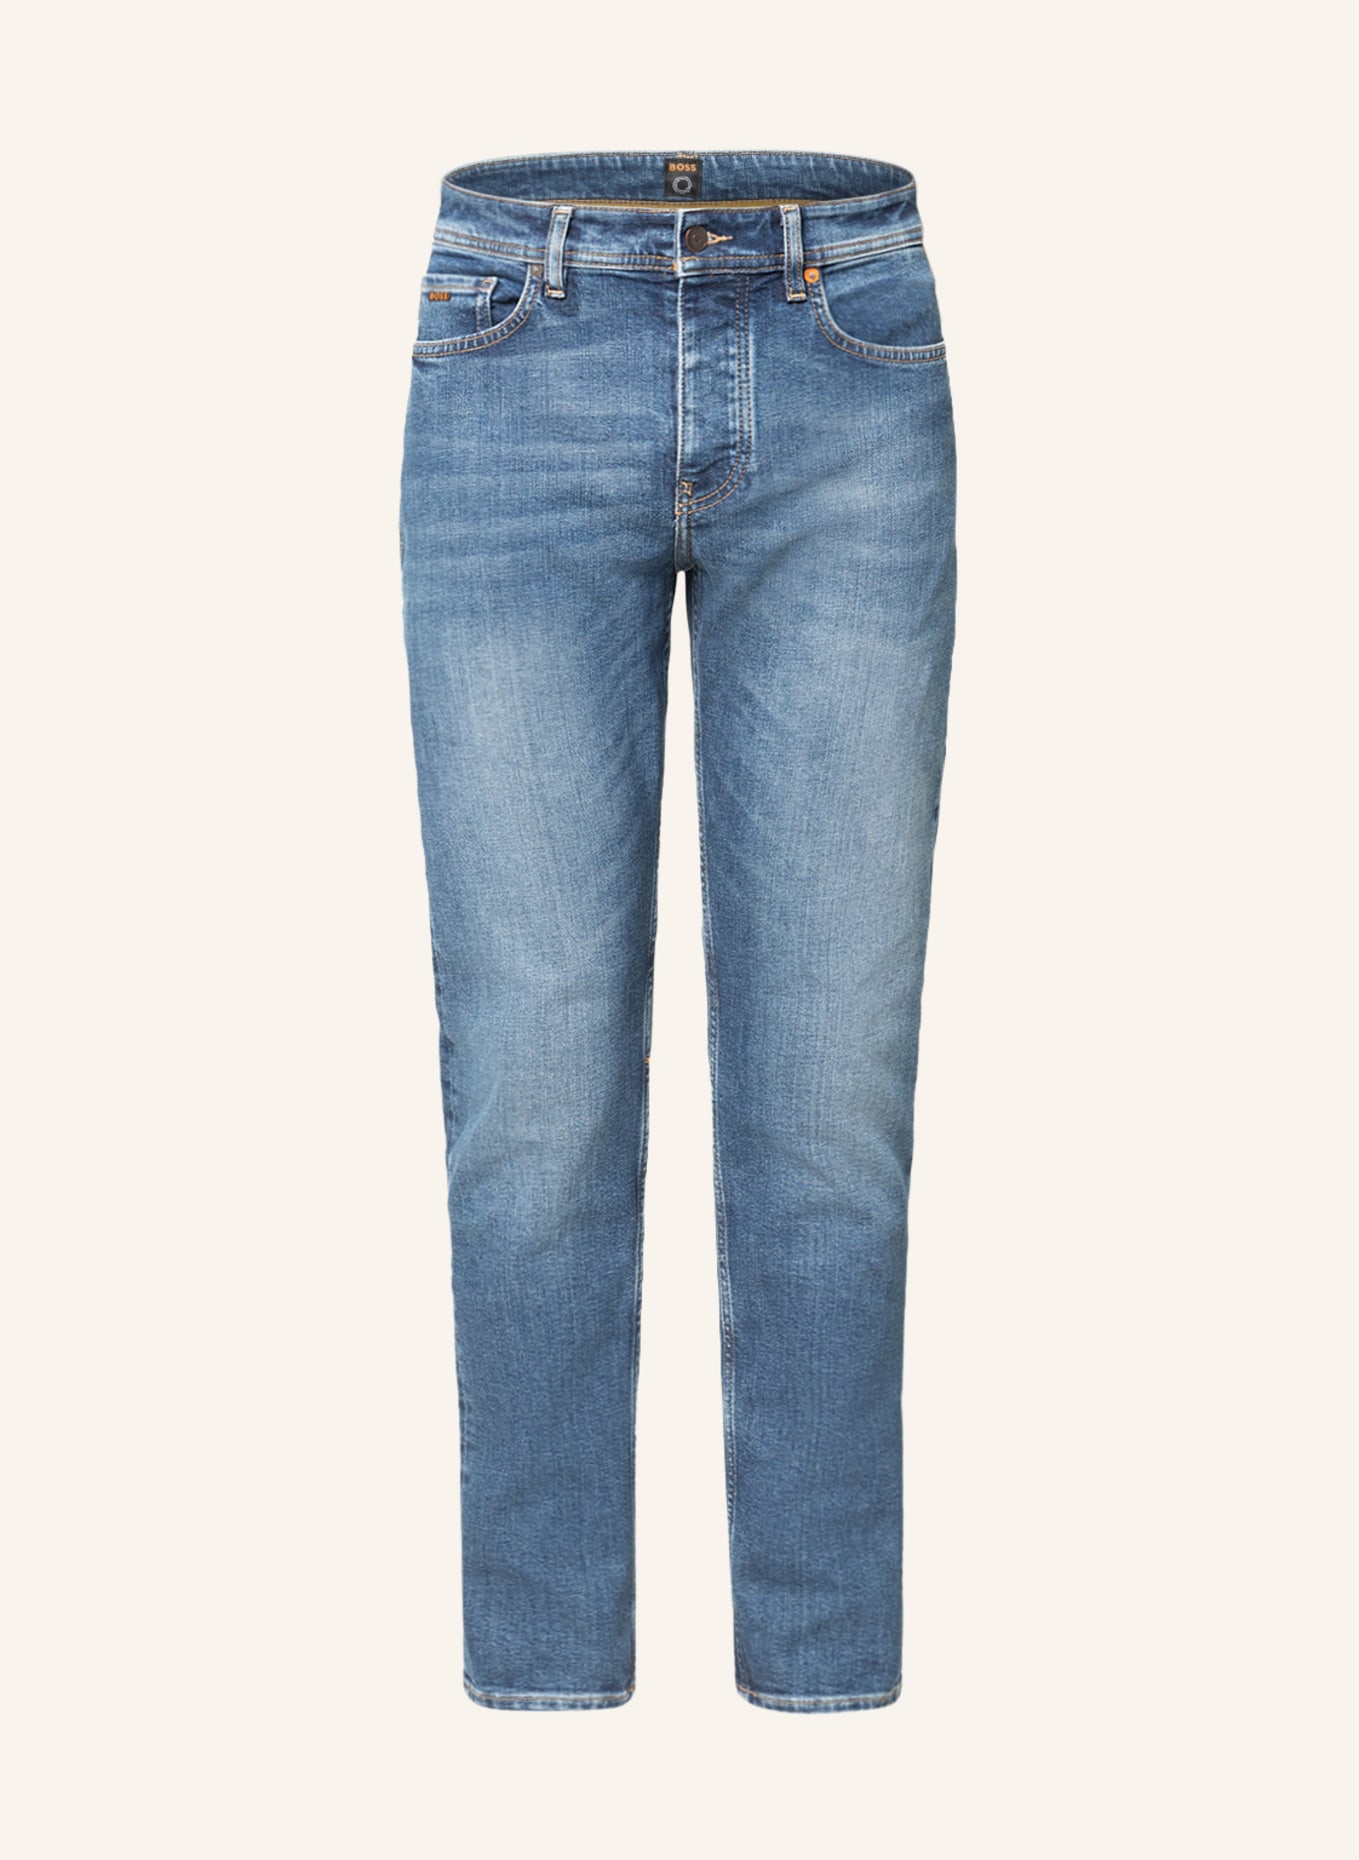 BOSS Jeans TABER Tapered Fit, Farbe: 428 MEDIUM BLUE (Bild 1)